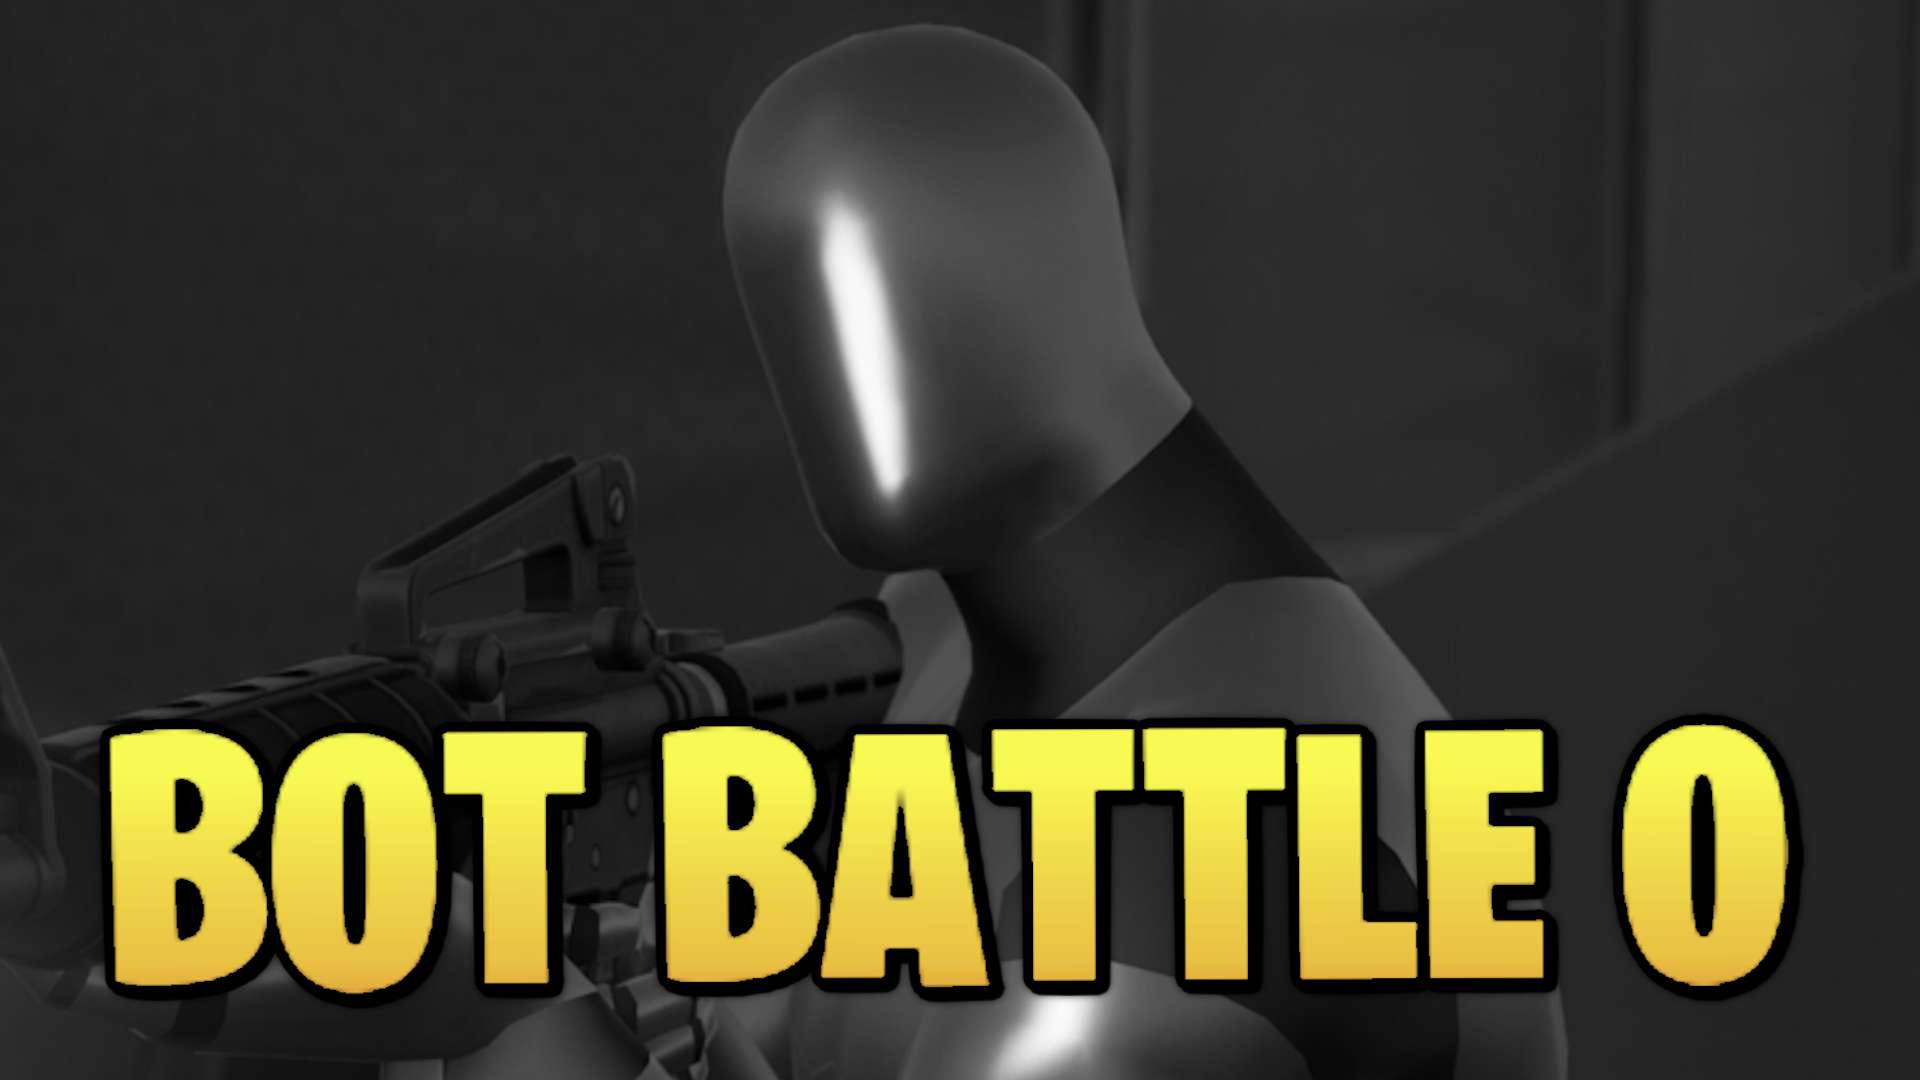 Bot Battle 0